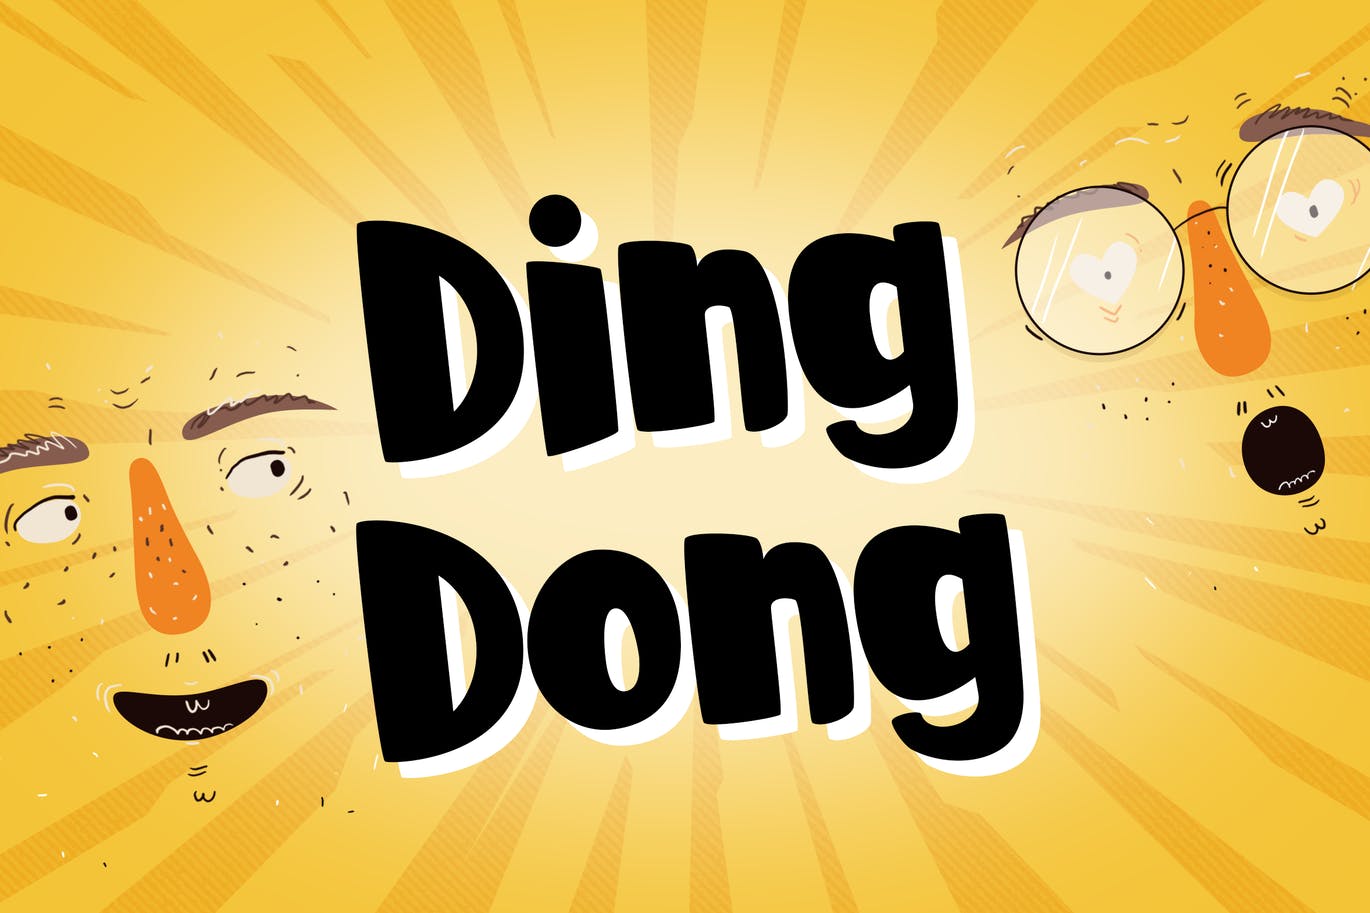 卡通漫画无衬线字体素材 Ding Dong – Comic Display Font 设计素材 第1张